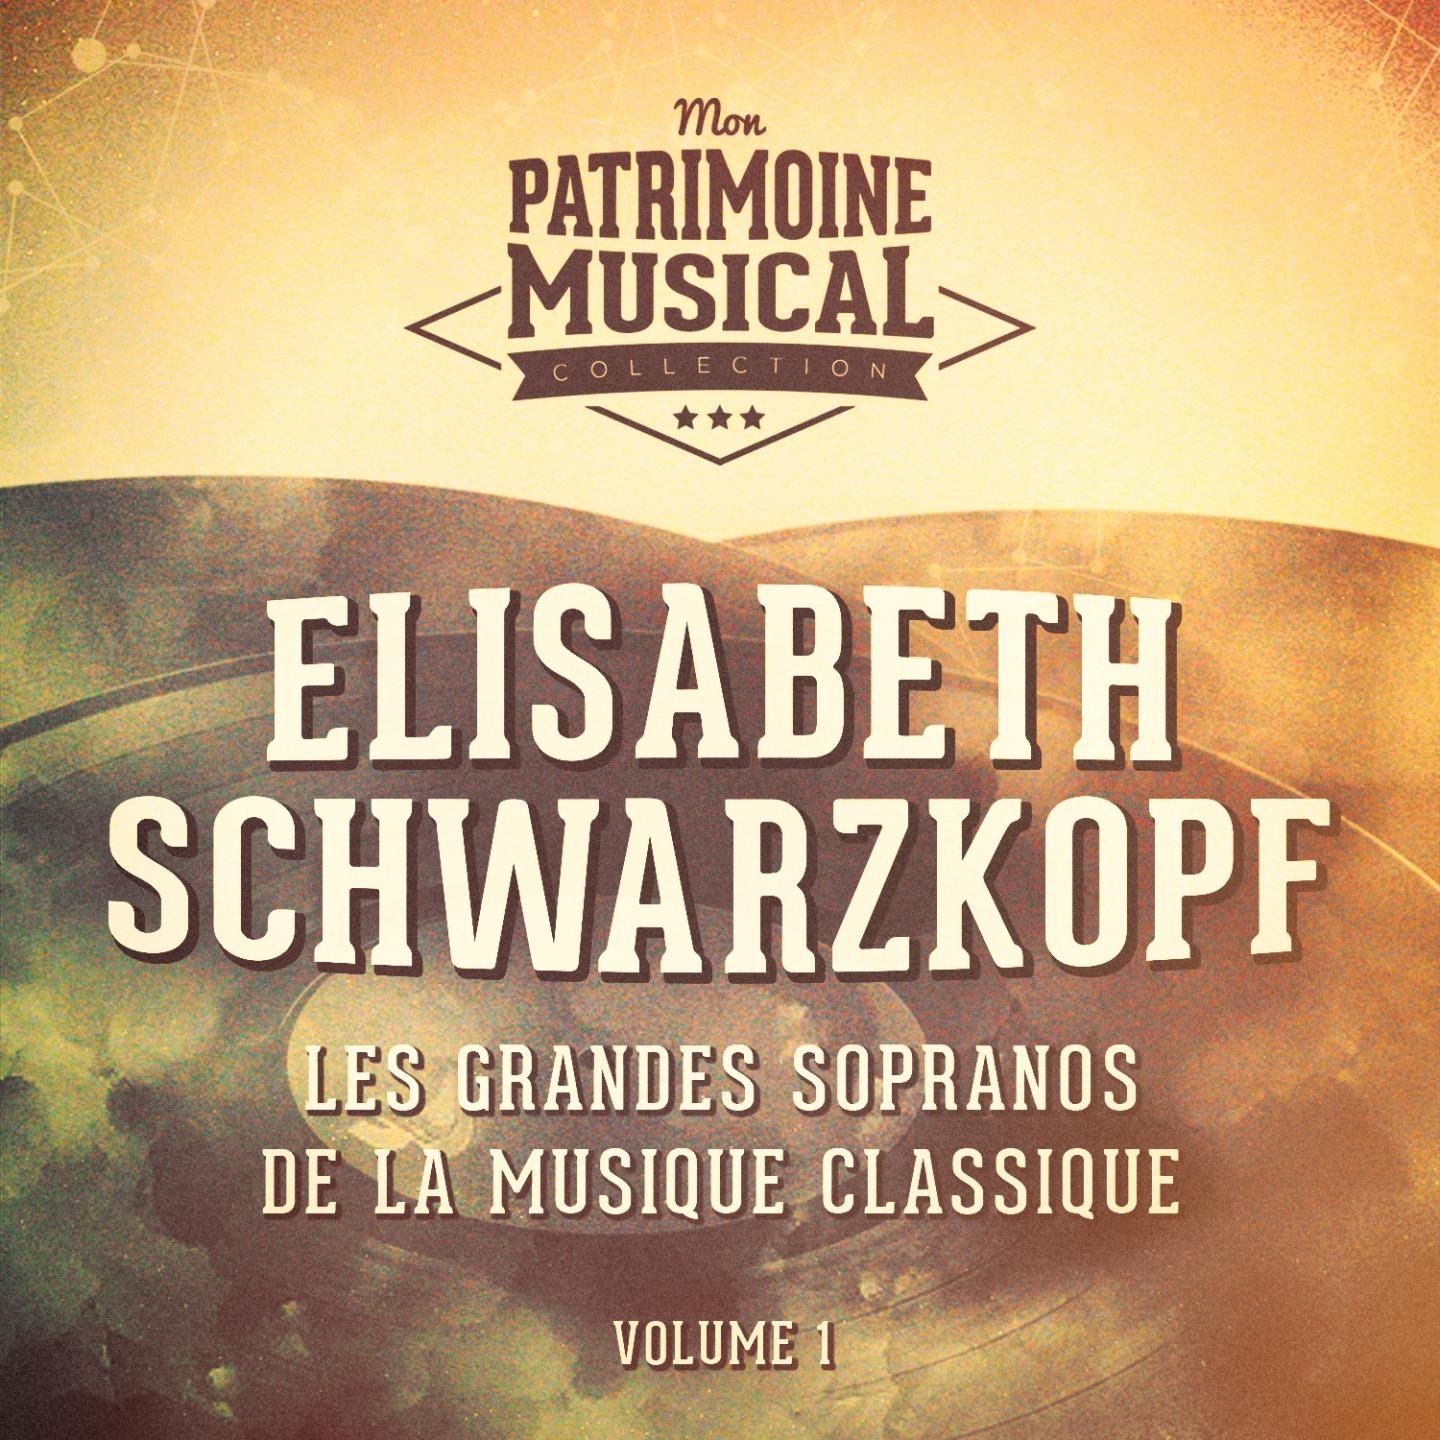 Les grandes sopranos de la musique classique : Elisabeth Schwarzkopf, Vol. 1